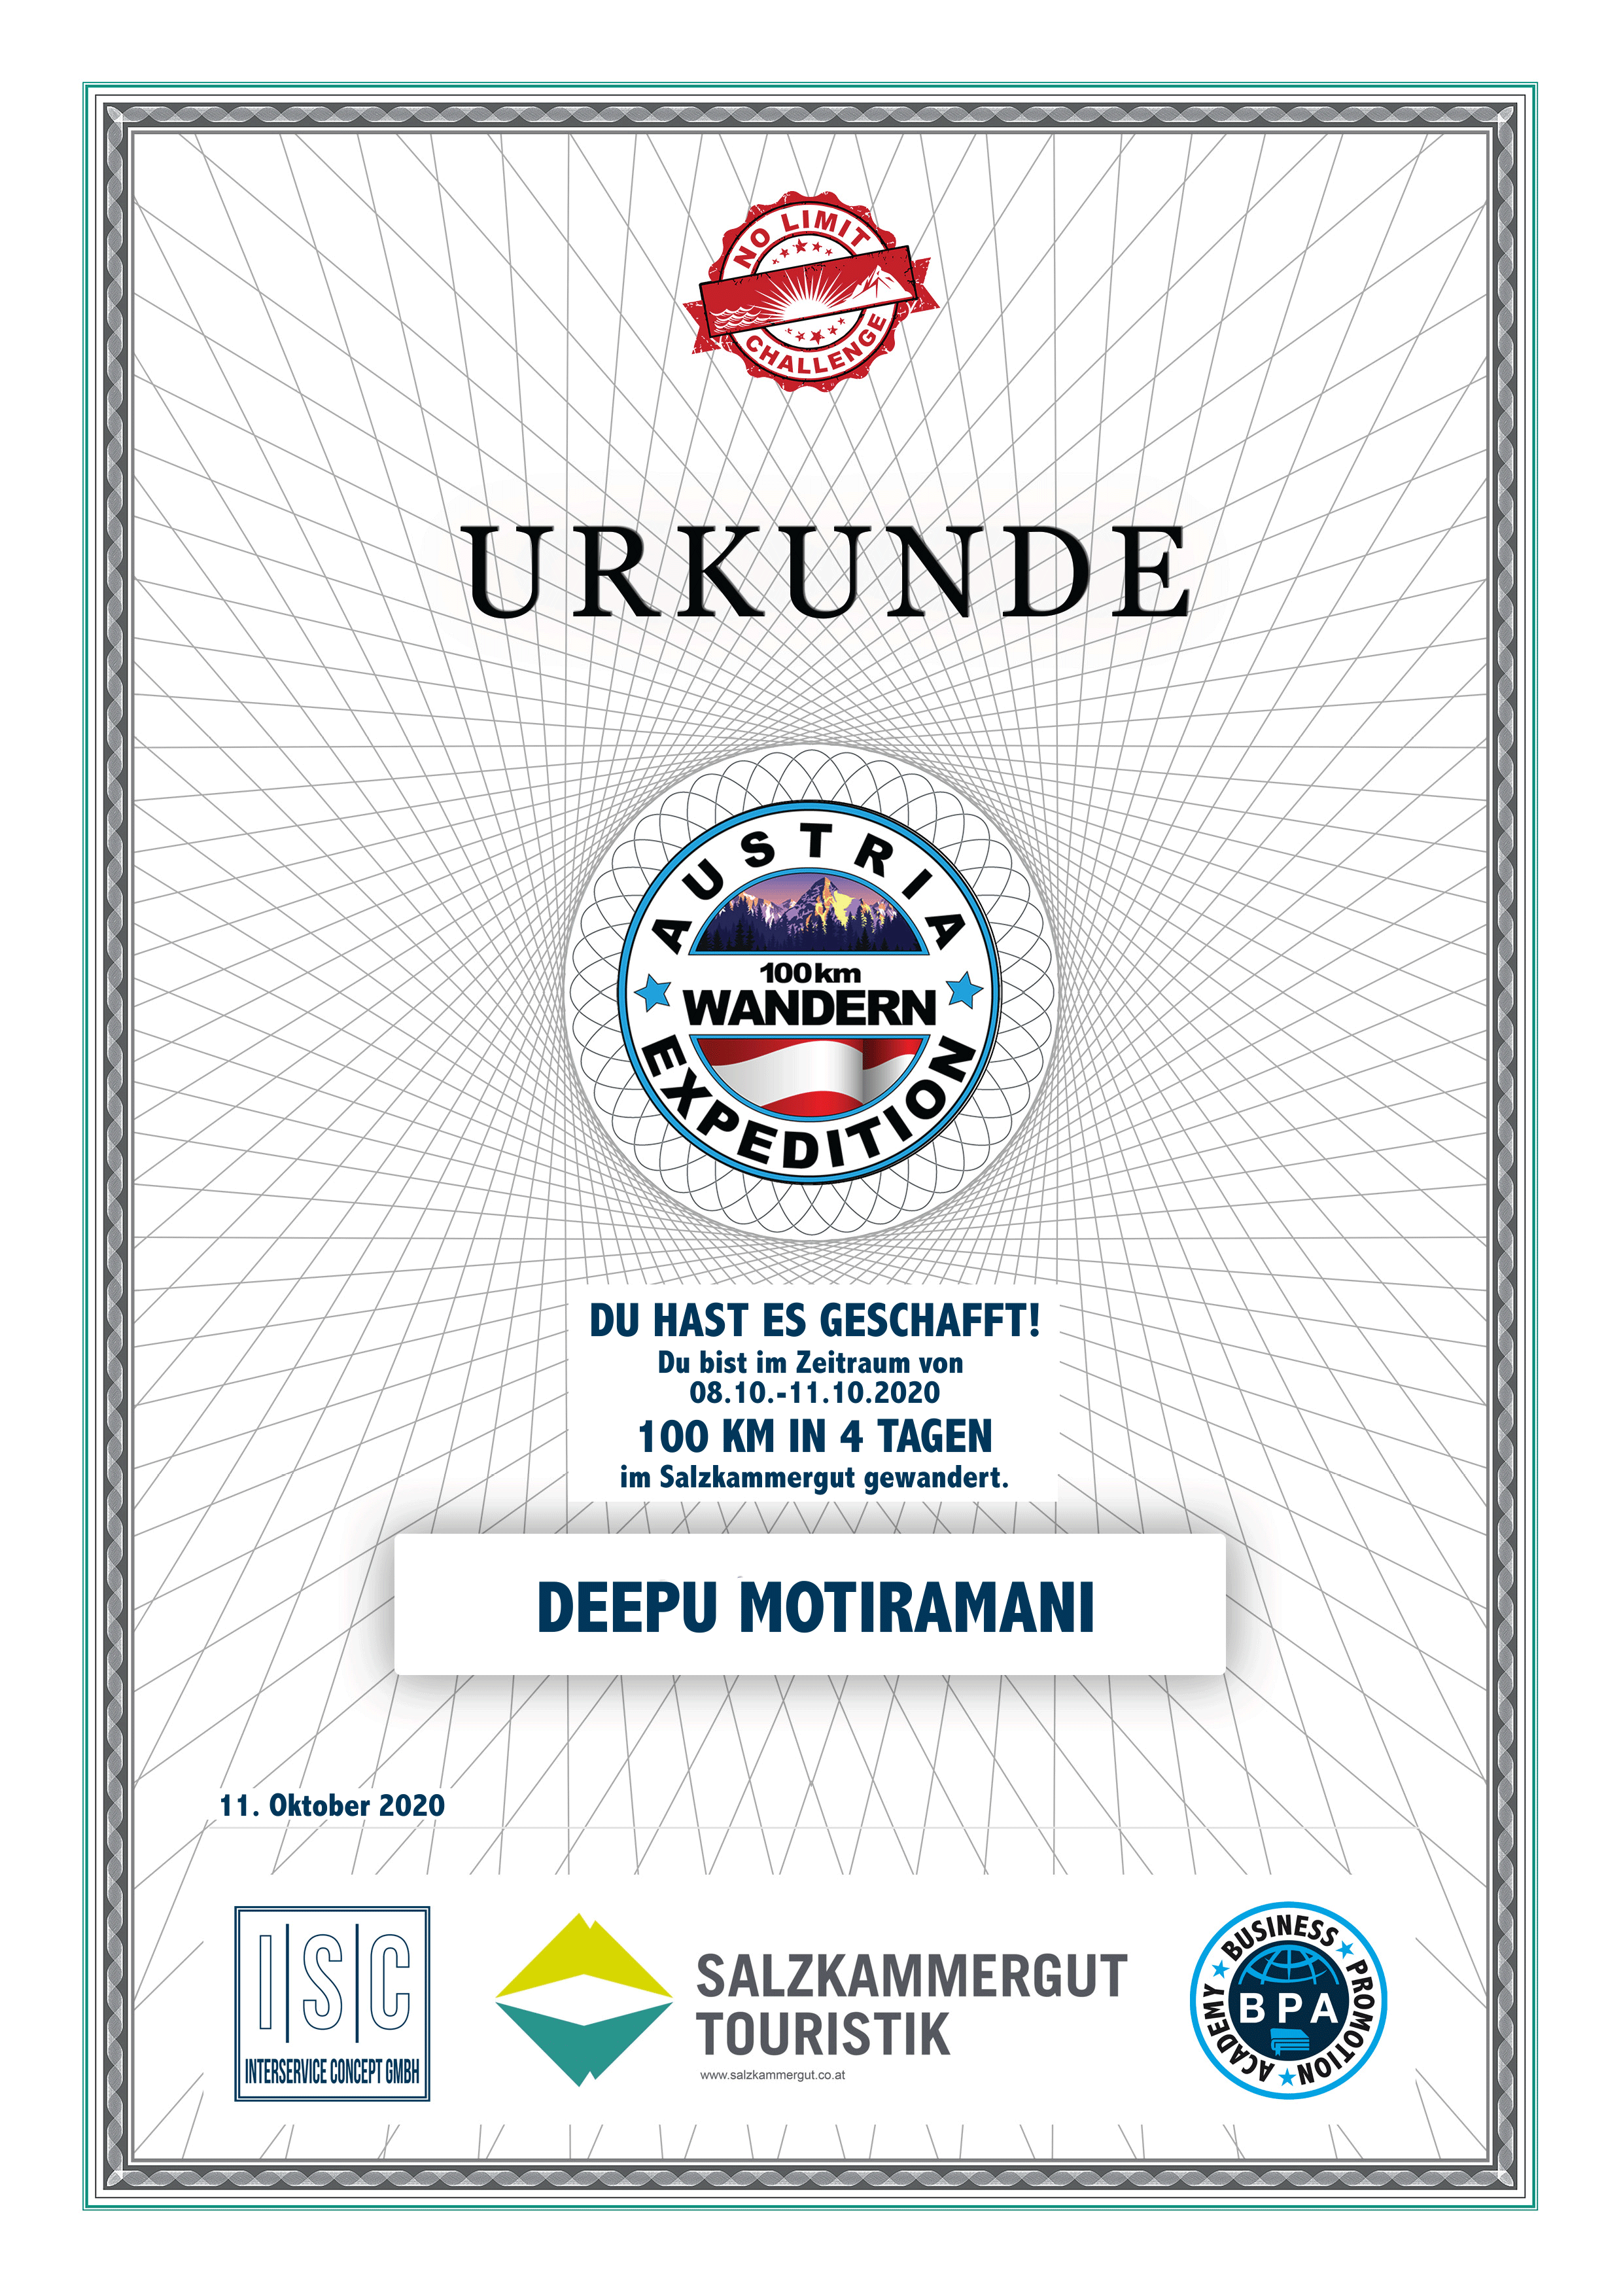 Deepu Motiramani - Urkunde